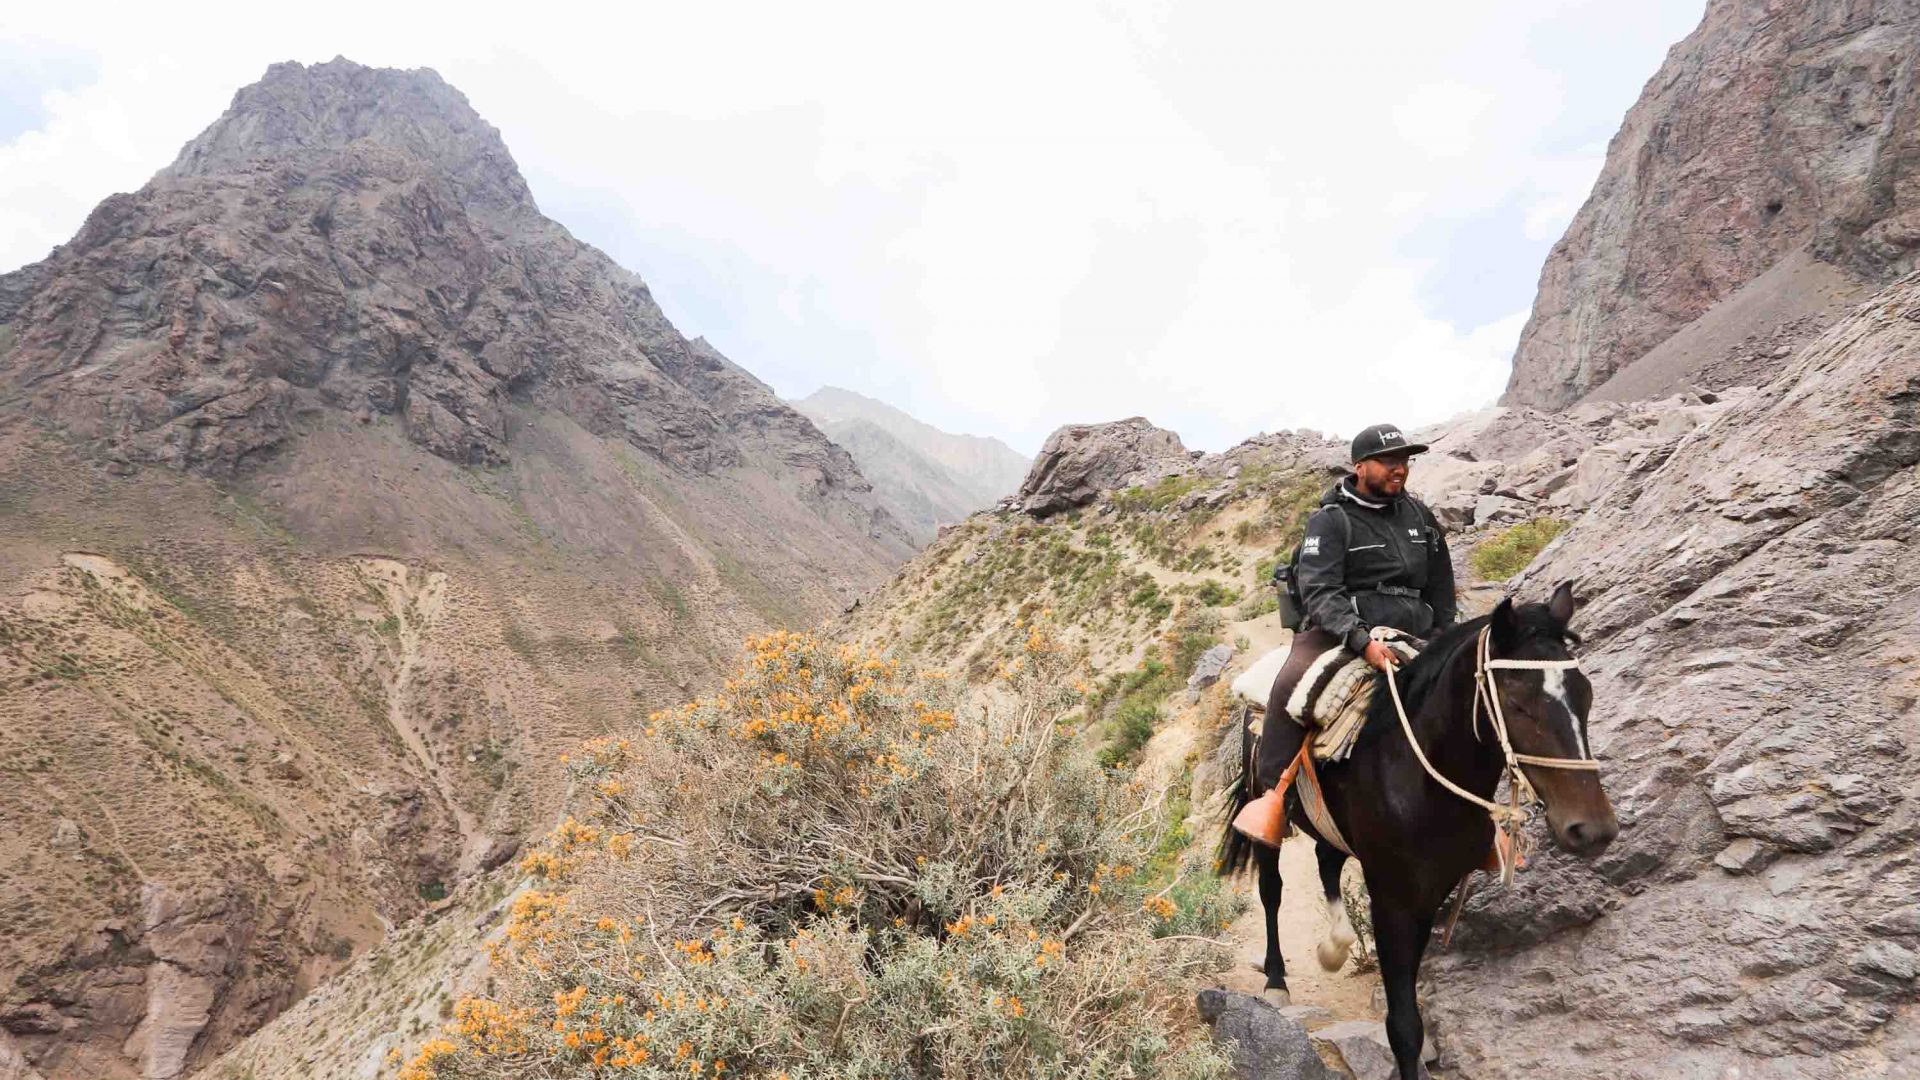 A man rides his horse through the arid mountains.